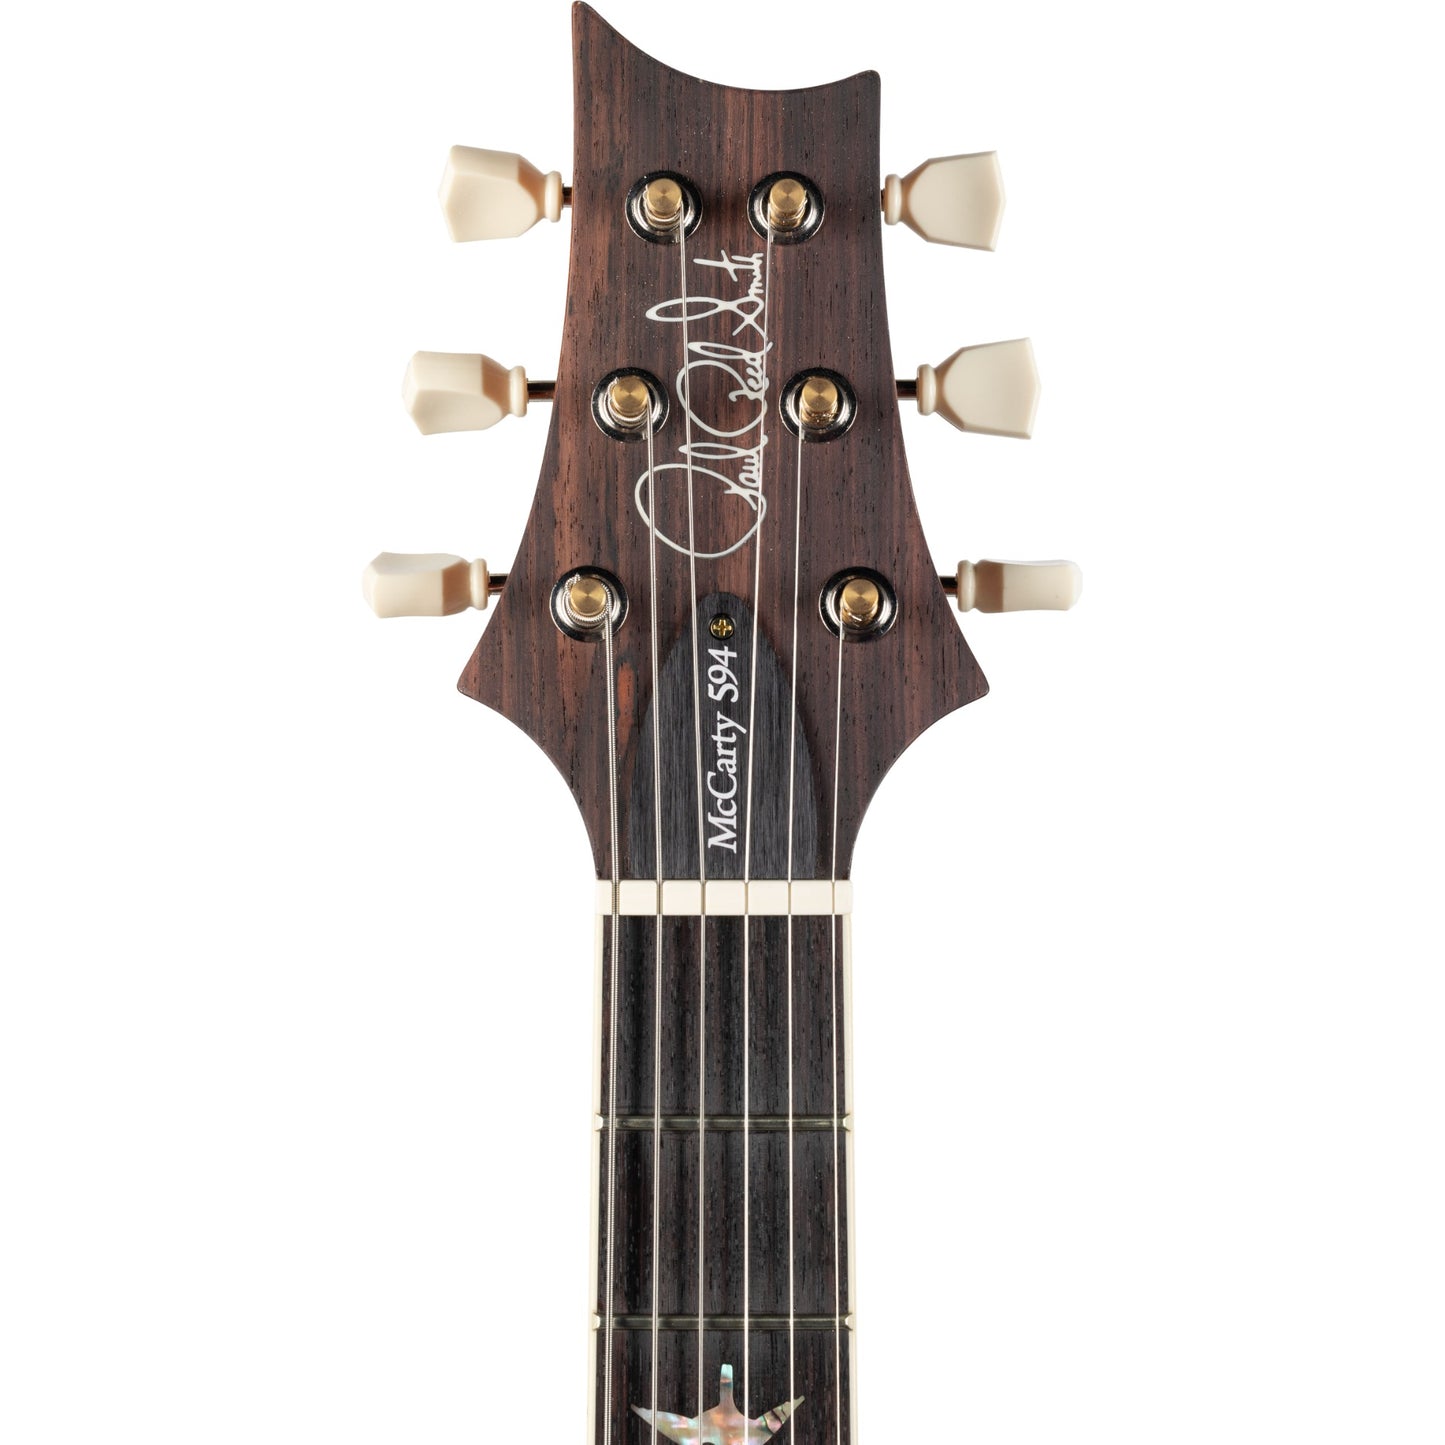 PRS McCarty 594 10 Top Electric Guitar - Aquamarine